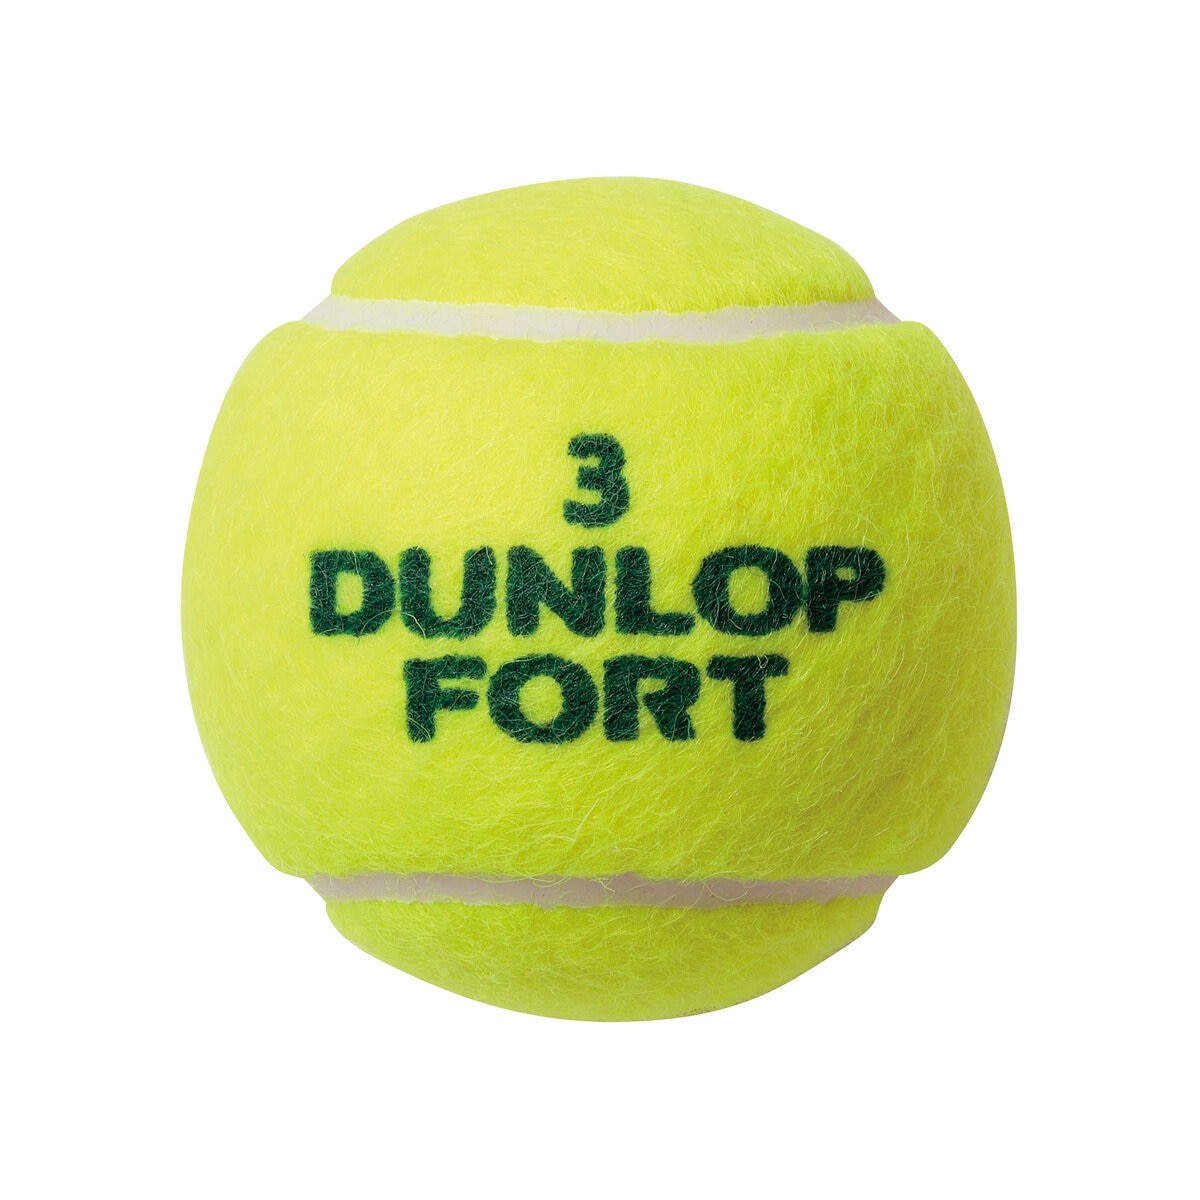 テニスボール ダンロップフォート 27缶 - ボール